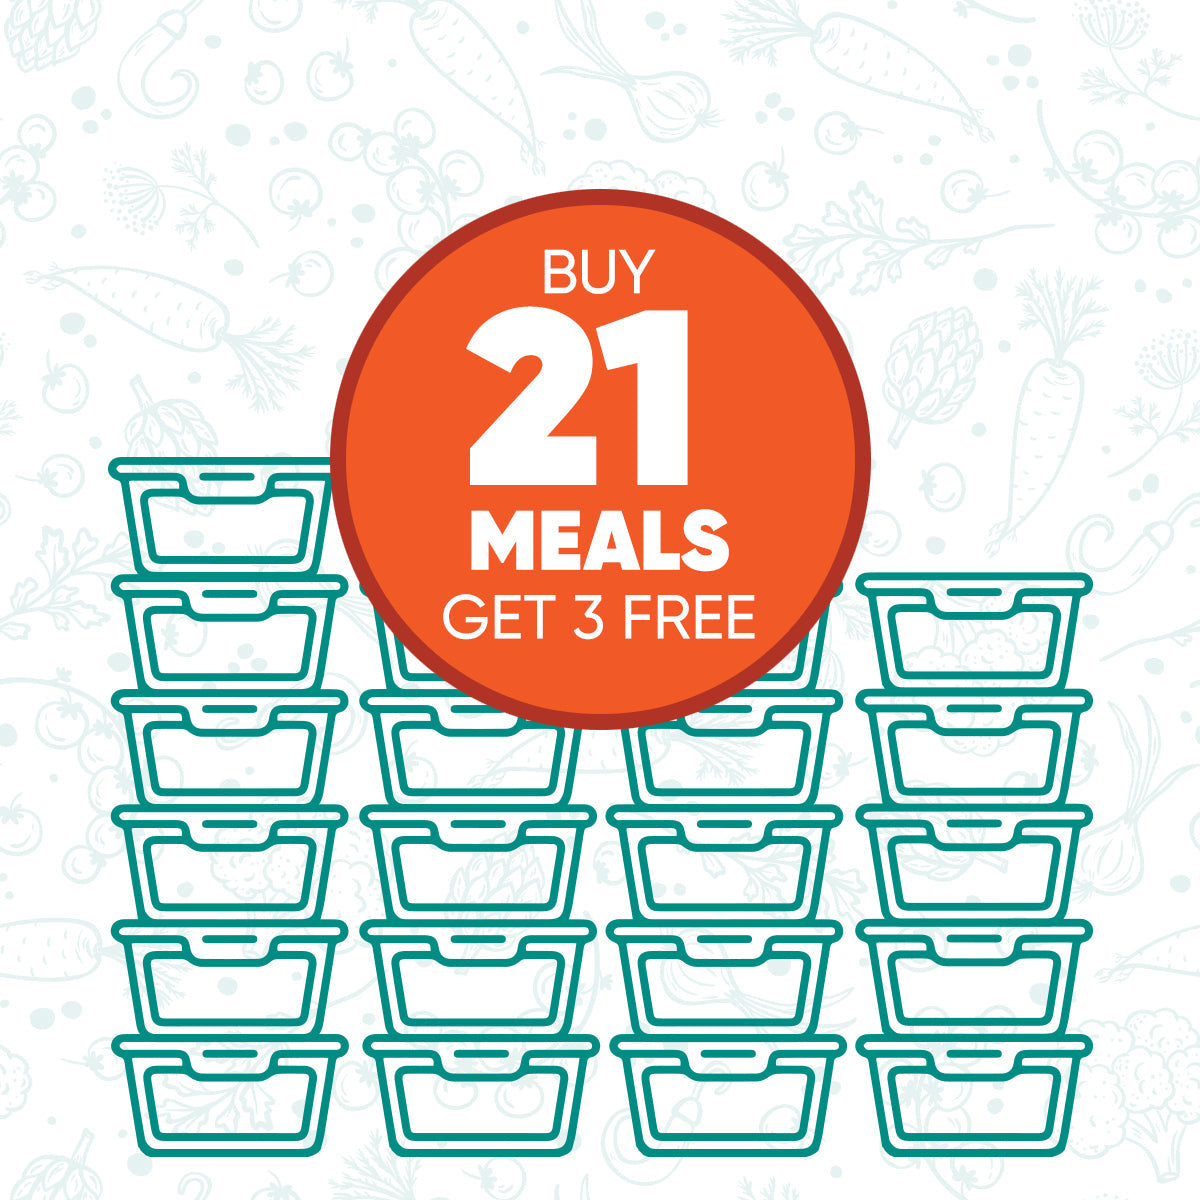 Buy 21 Meals, Get 3 Free